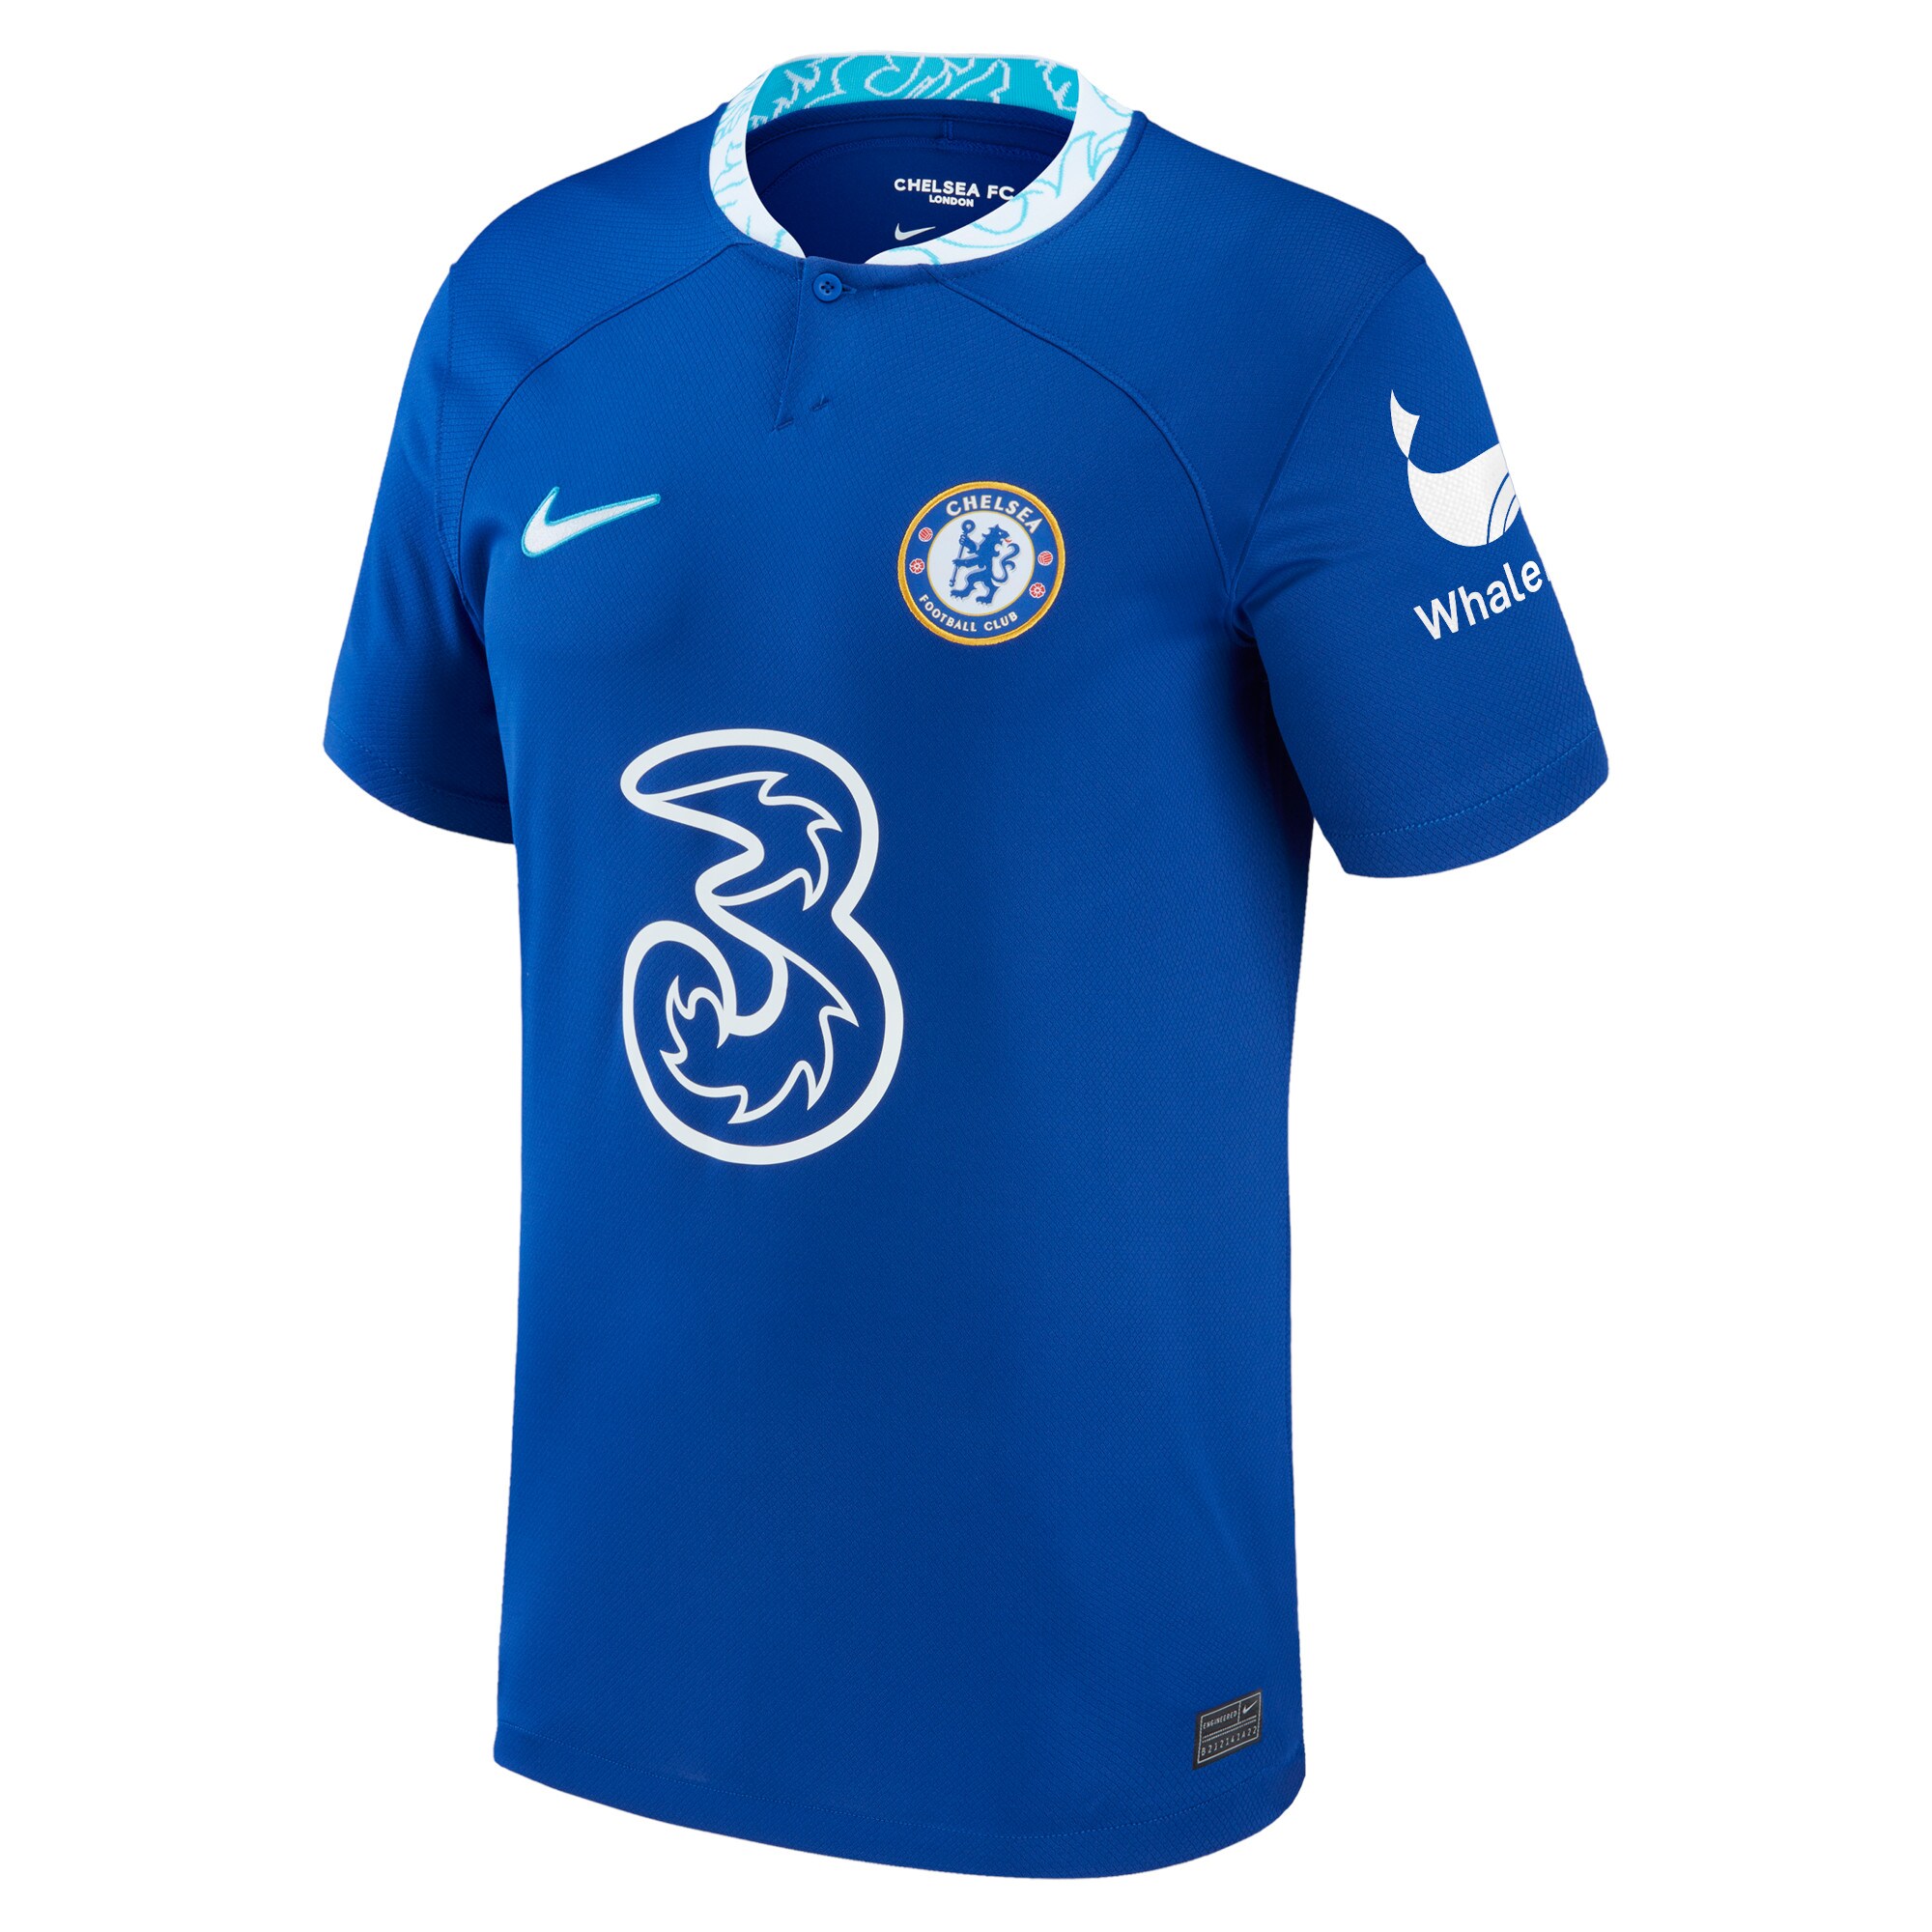 Chelsea WSL Home Stadium Shirt 2022-23 with Abdullina 27 printing